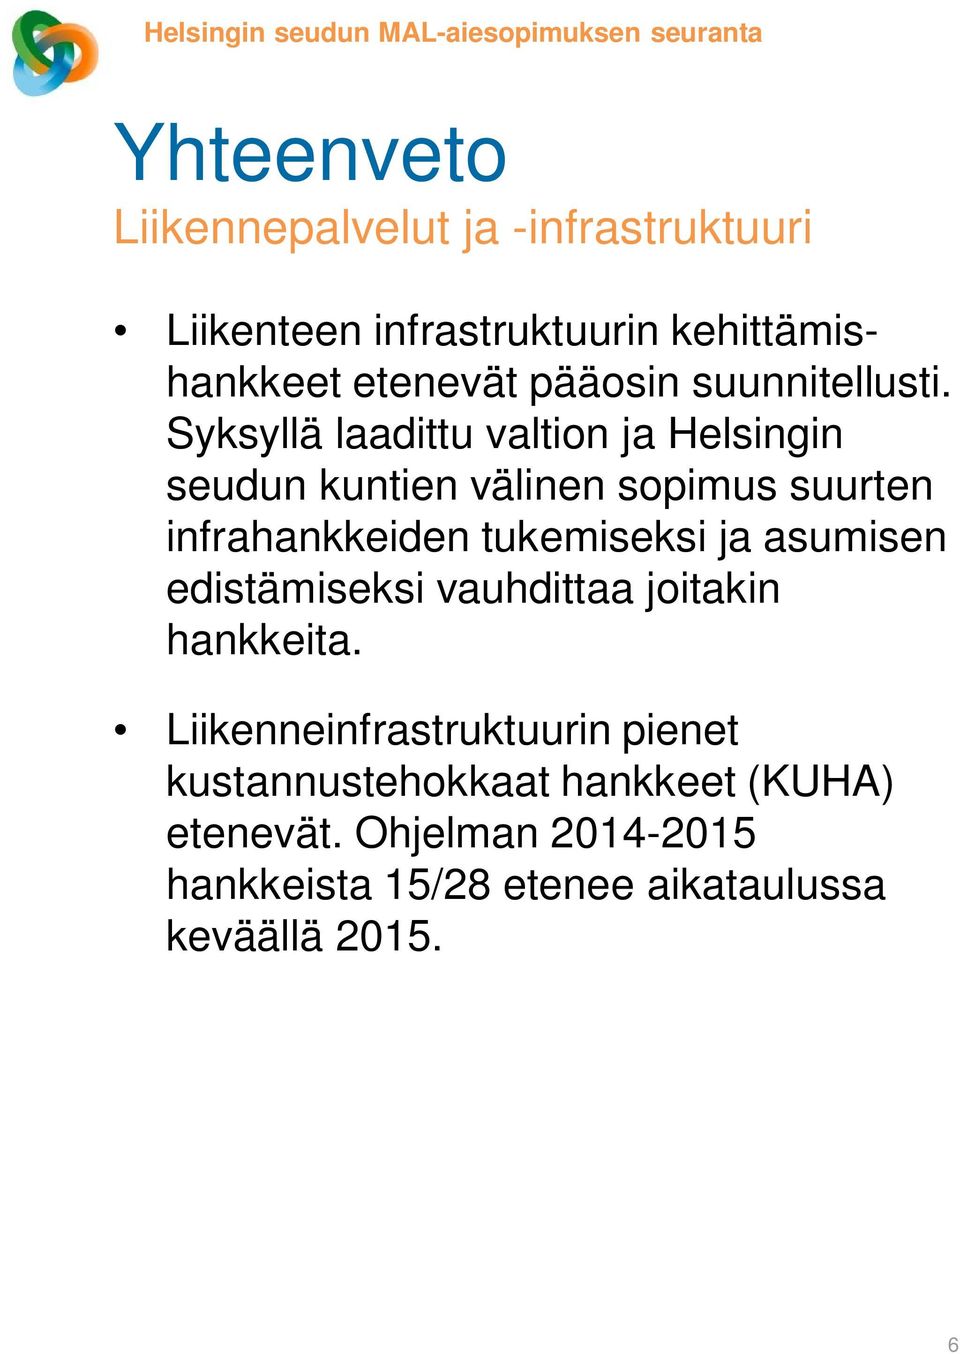 Syksyllä laadittu valtion ja Helsingin seudun kuntien välinen sopimus suurten infrahankkeiden tukemiseksi ja asumisen